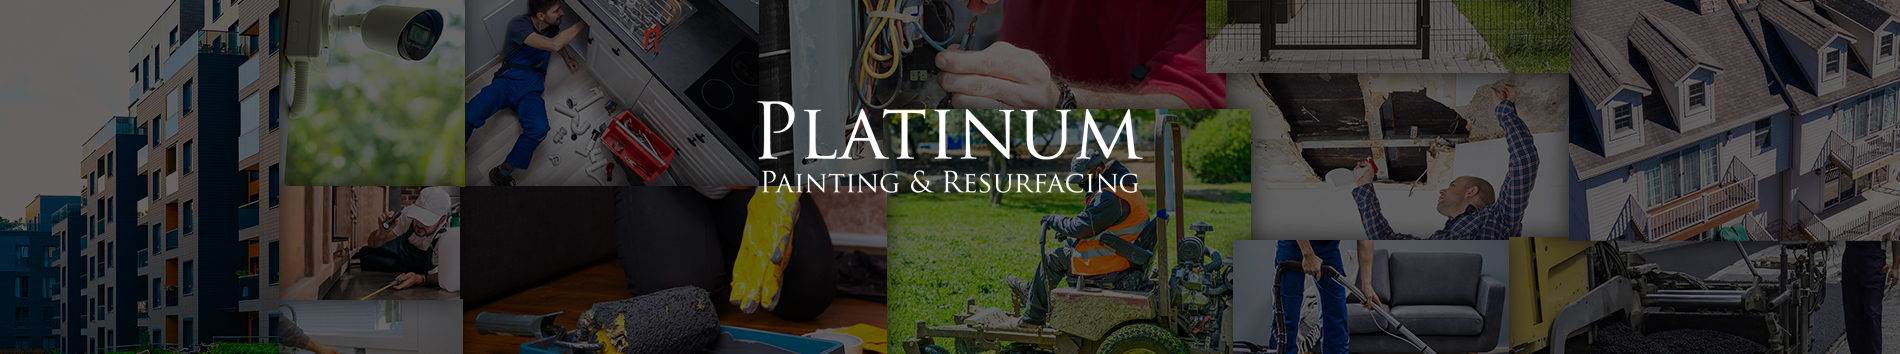 Platinum Painting & Resurfacing